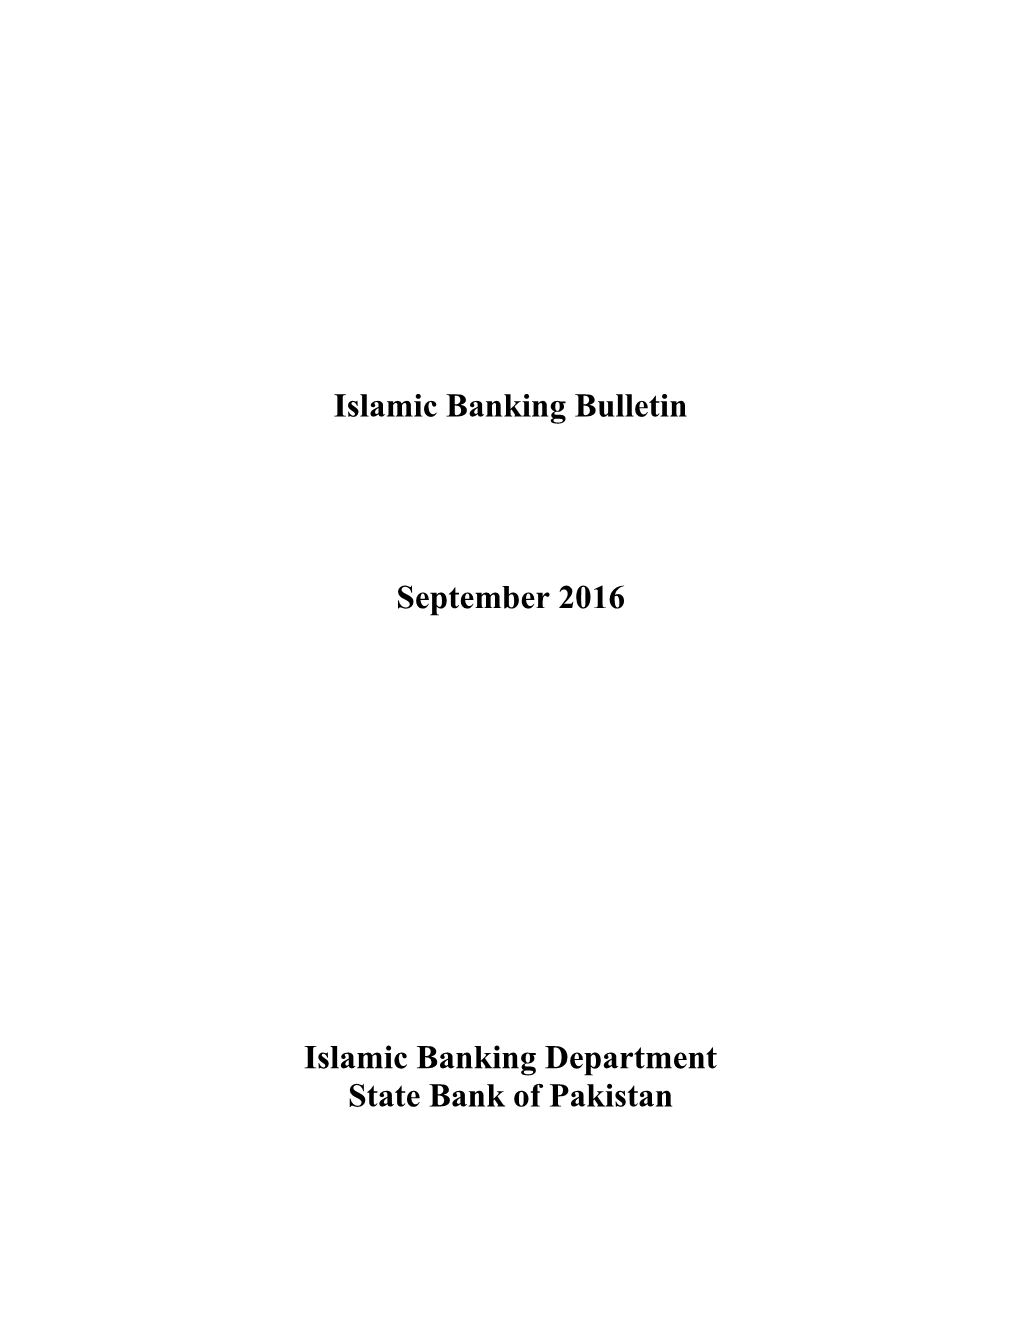 Islamic Banking Bulletin September 2016